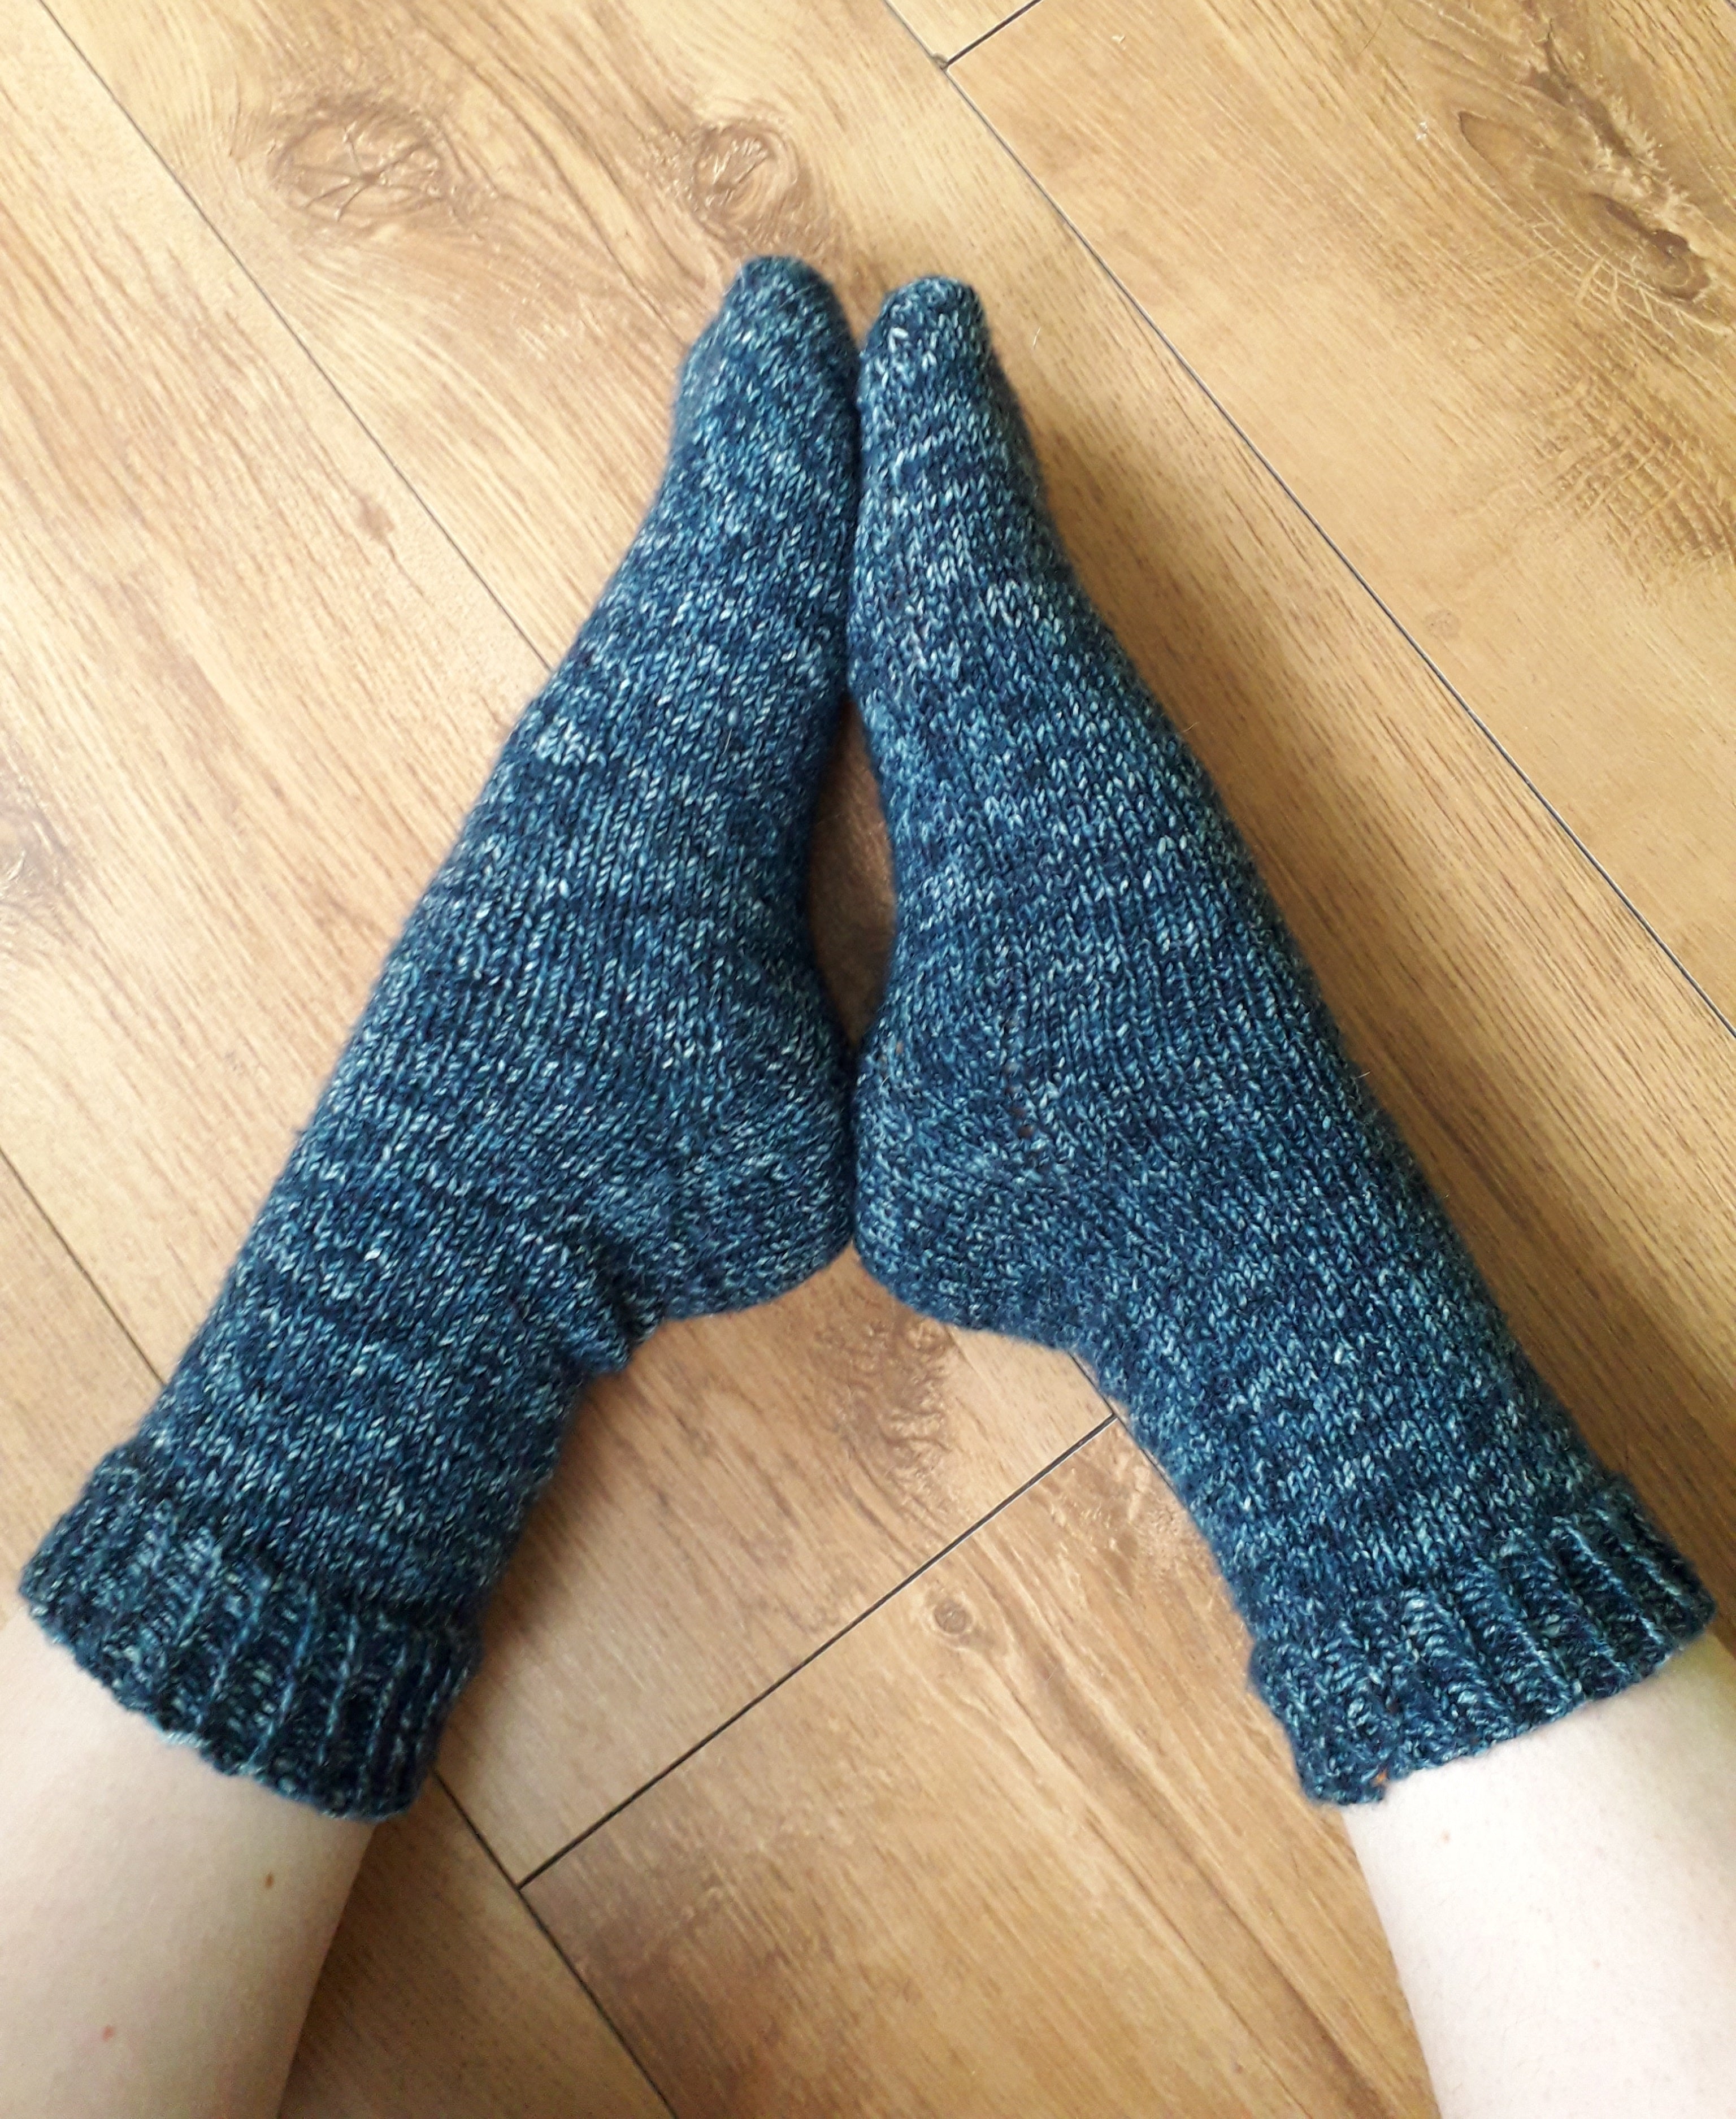 Sock Knitting: About Knitting Sock Cuffs 